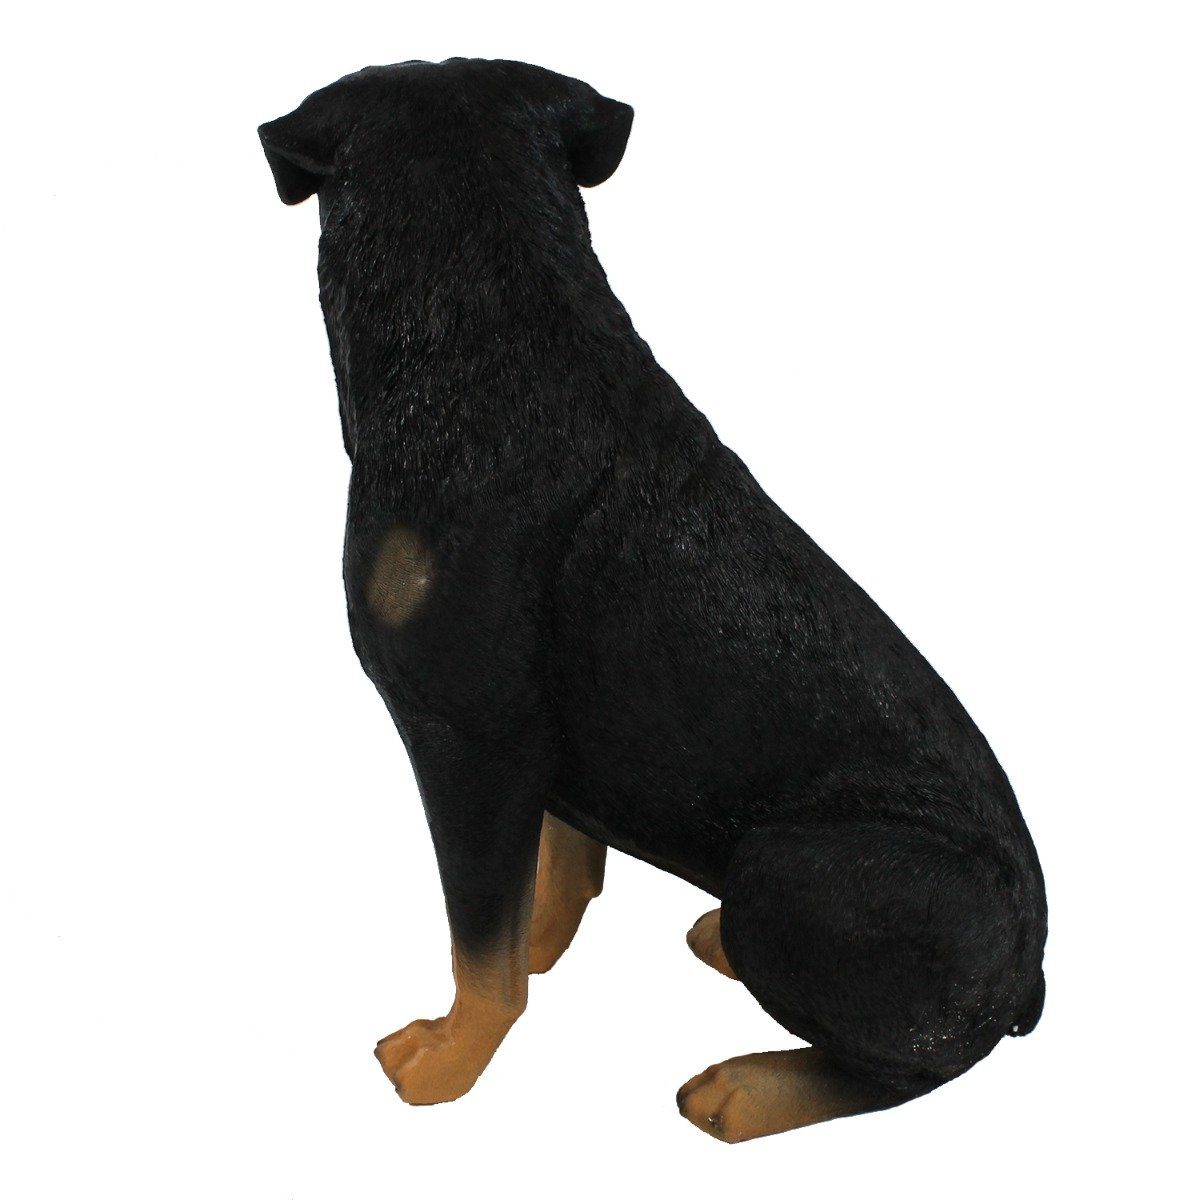 Tierfigur Darstellung Rottweiler realistische Tierfigur sitzend Filzplättchen, handbemalt, Figur Hund colourliving mit Hunde 30cm,